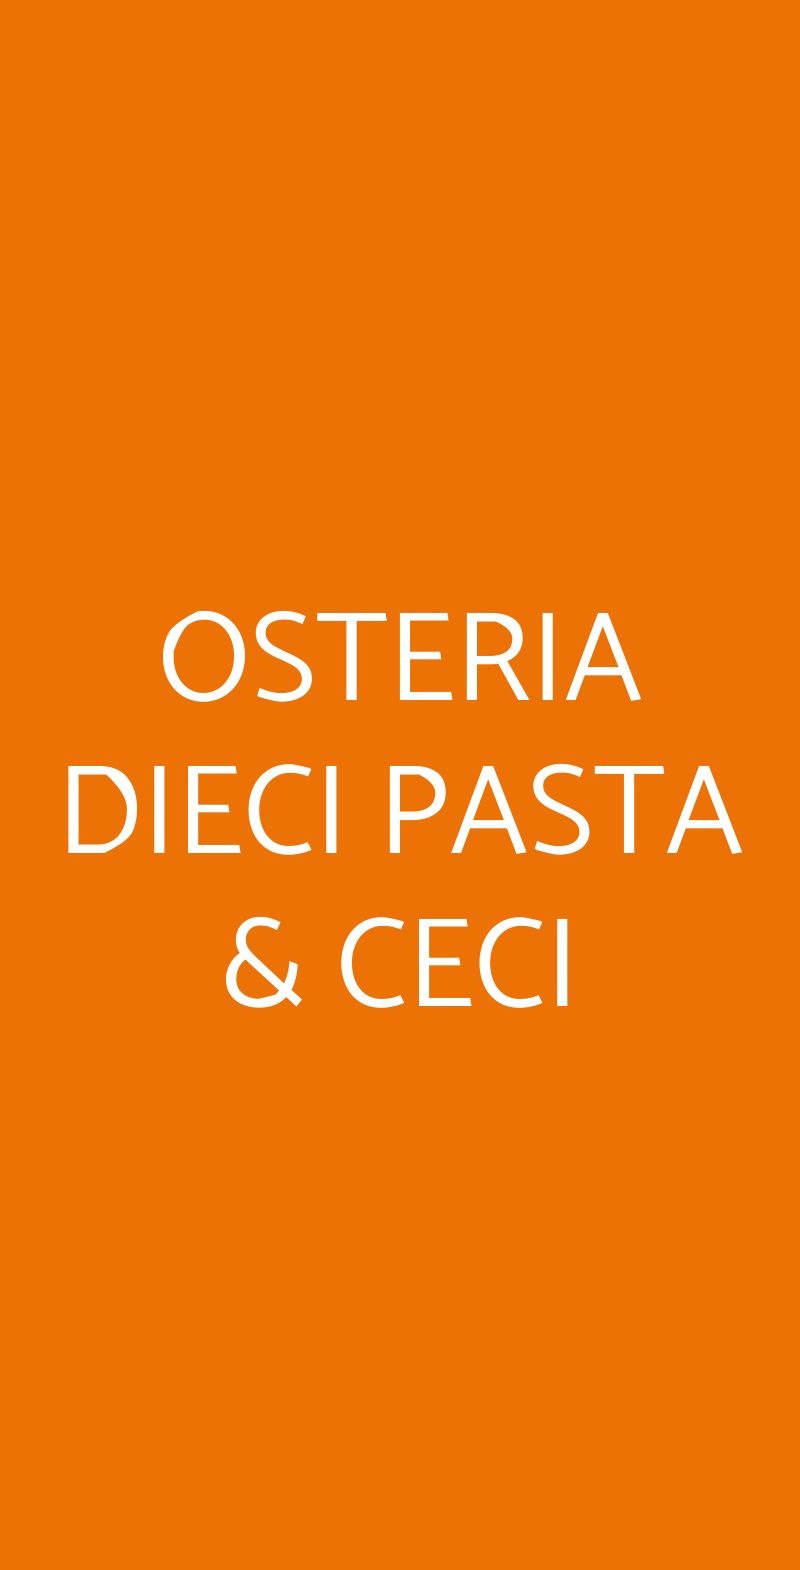 OSTERIA DIECI PASTA & CECI Napoli menù 1 pagina